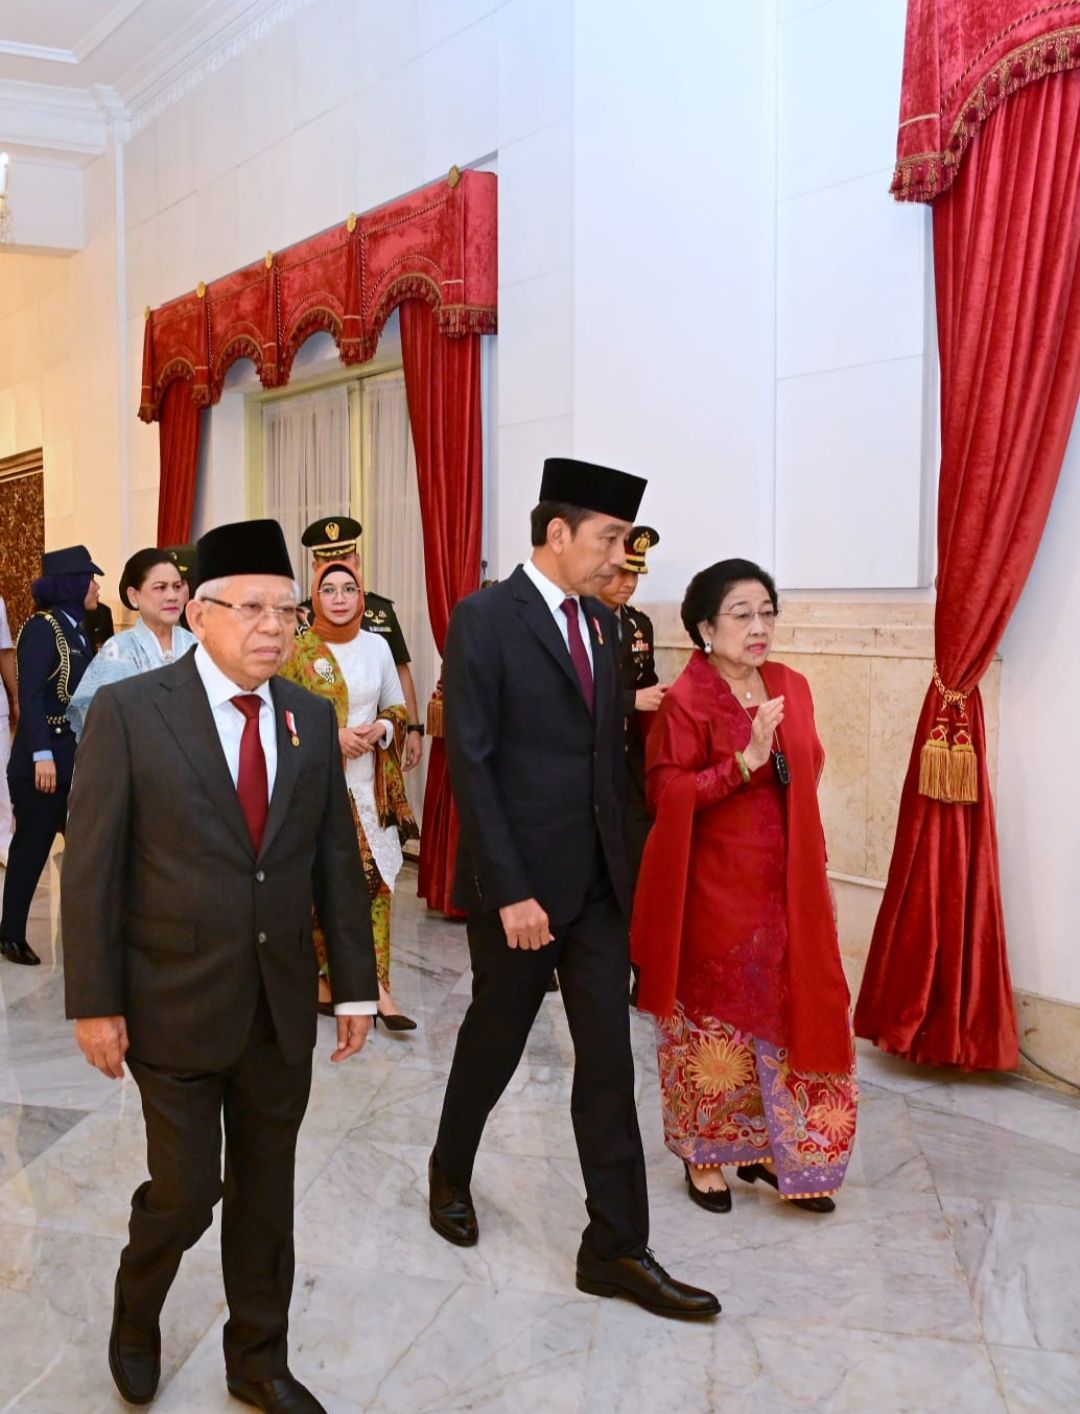 Saat Jokowi dan Megawati Tampak Akrab dan Bercanda dengan Paskibraka di Istana Negara